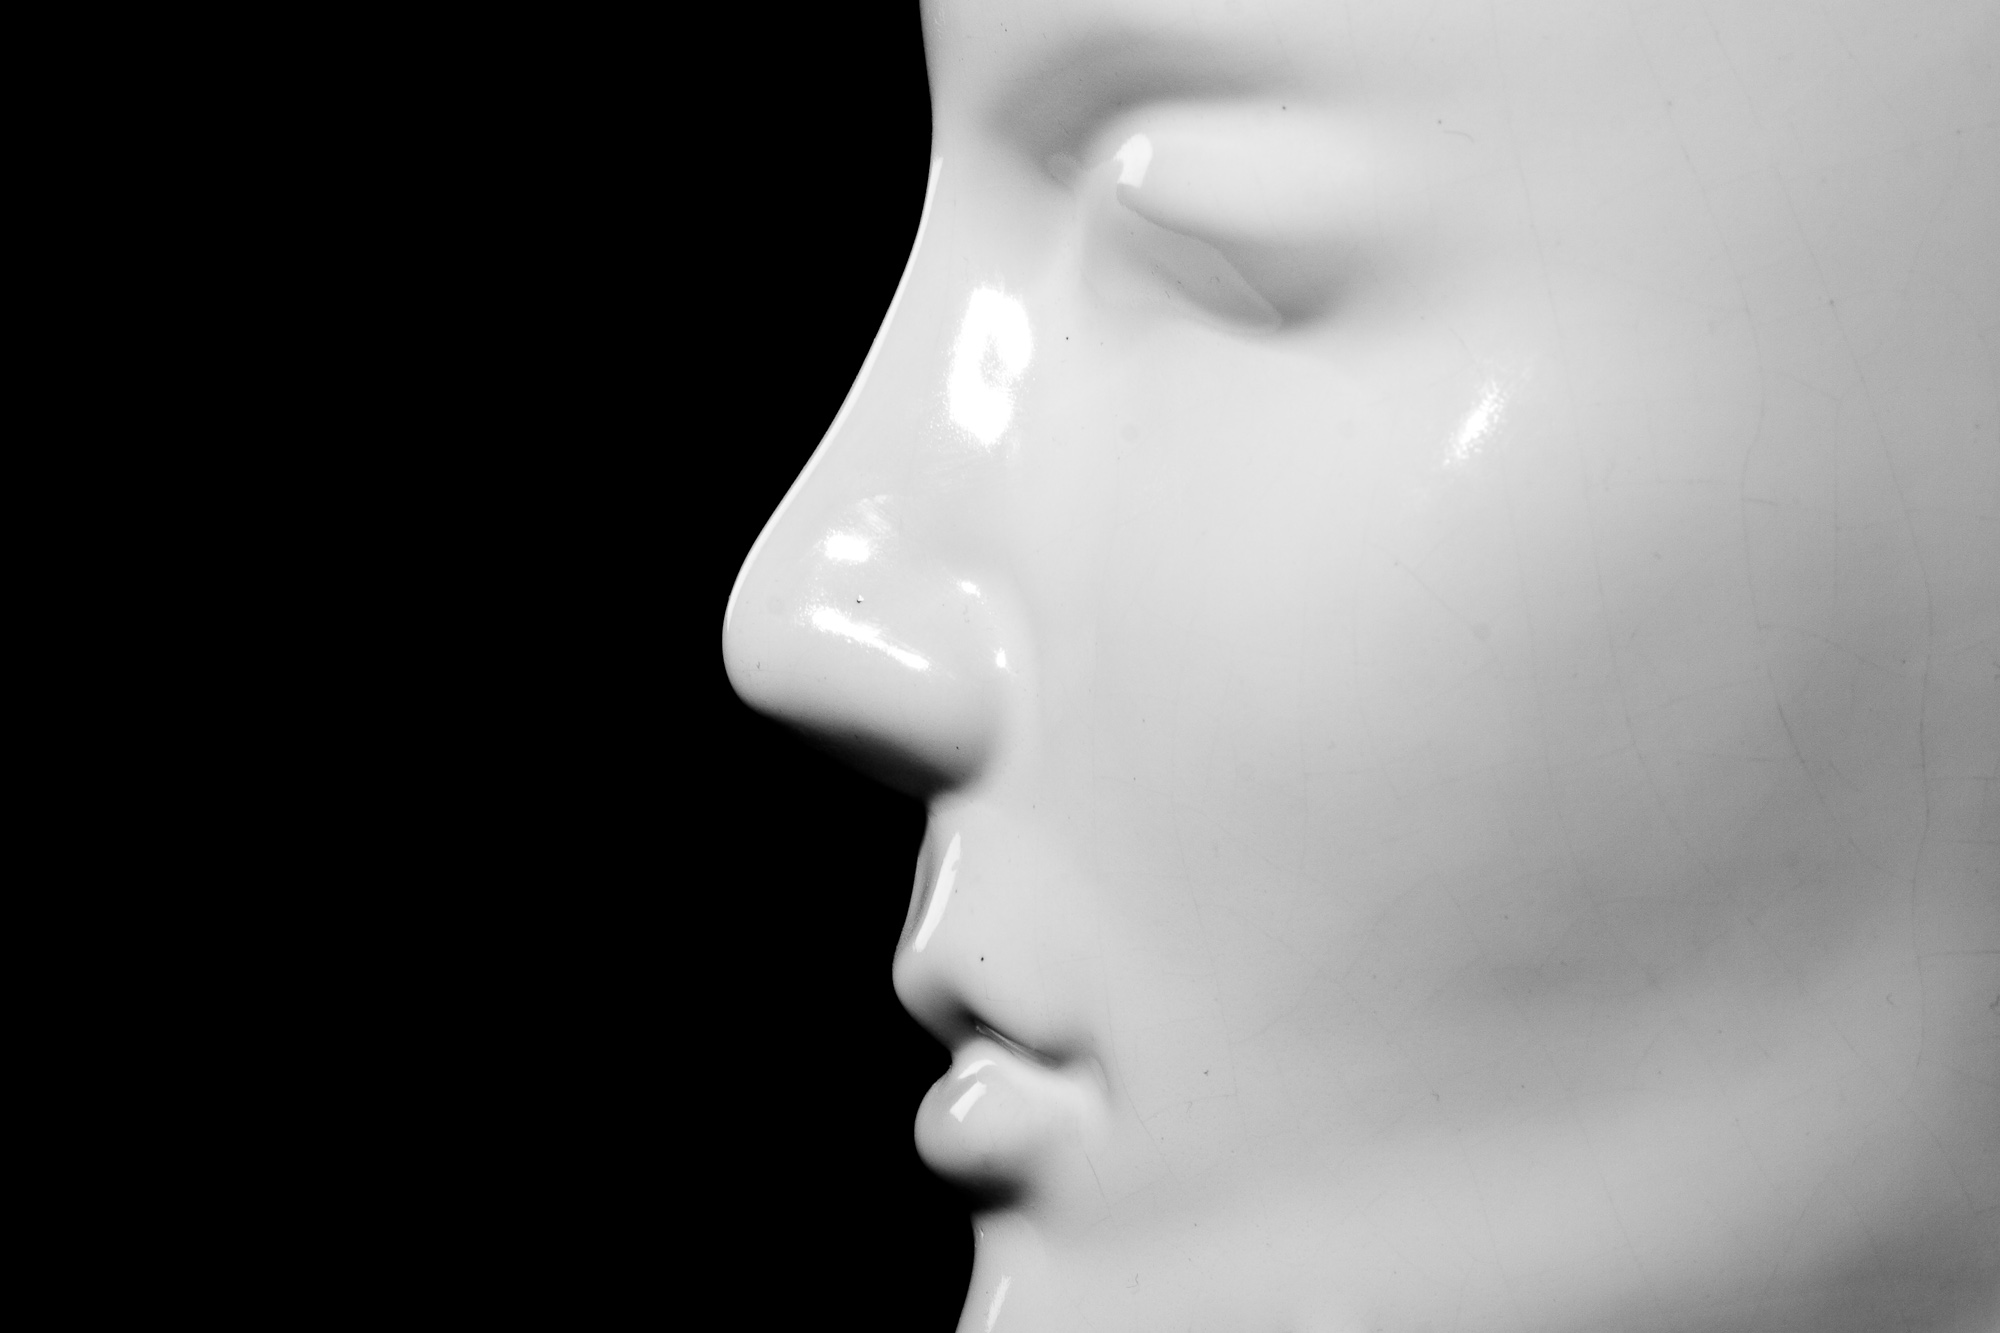 Mannequin close-up photo